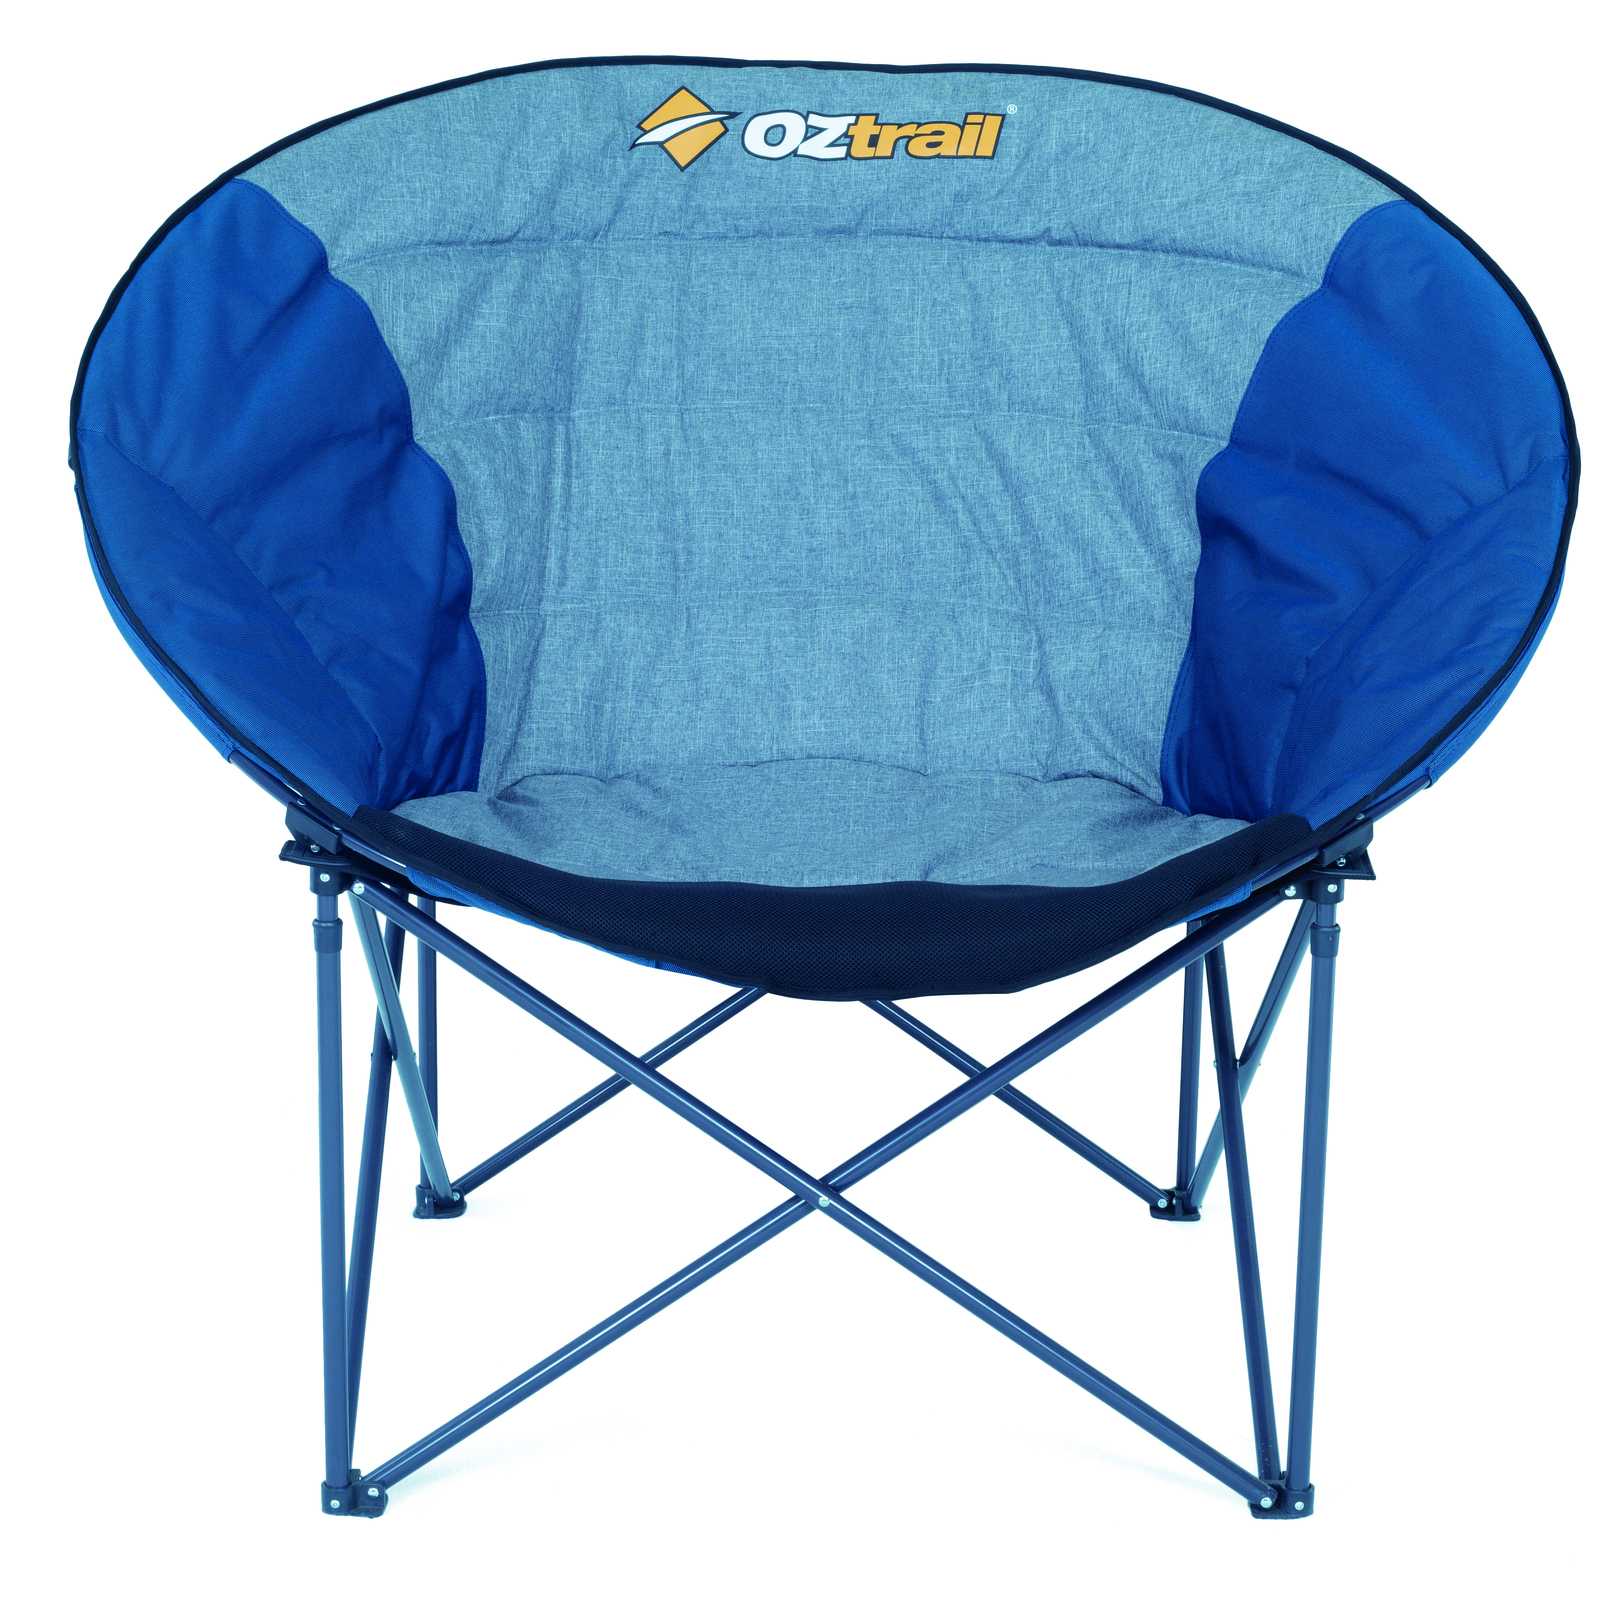 oztrail moon chair